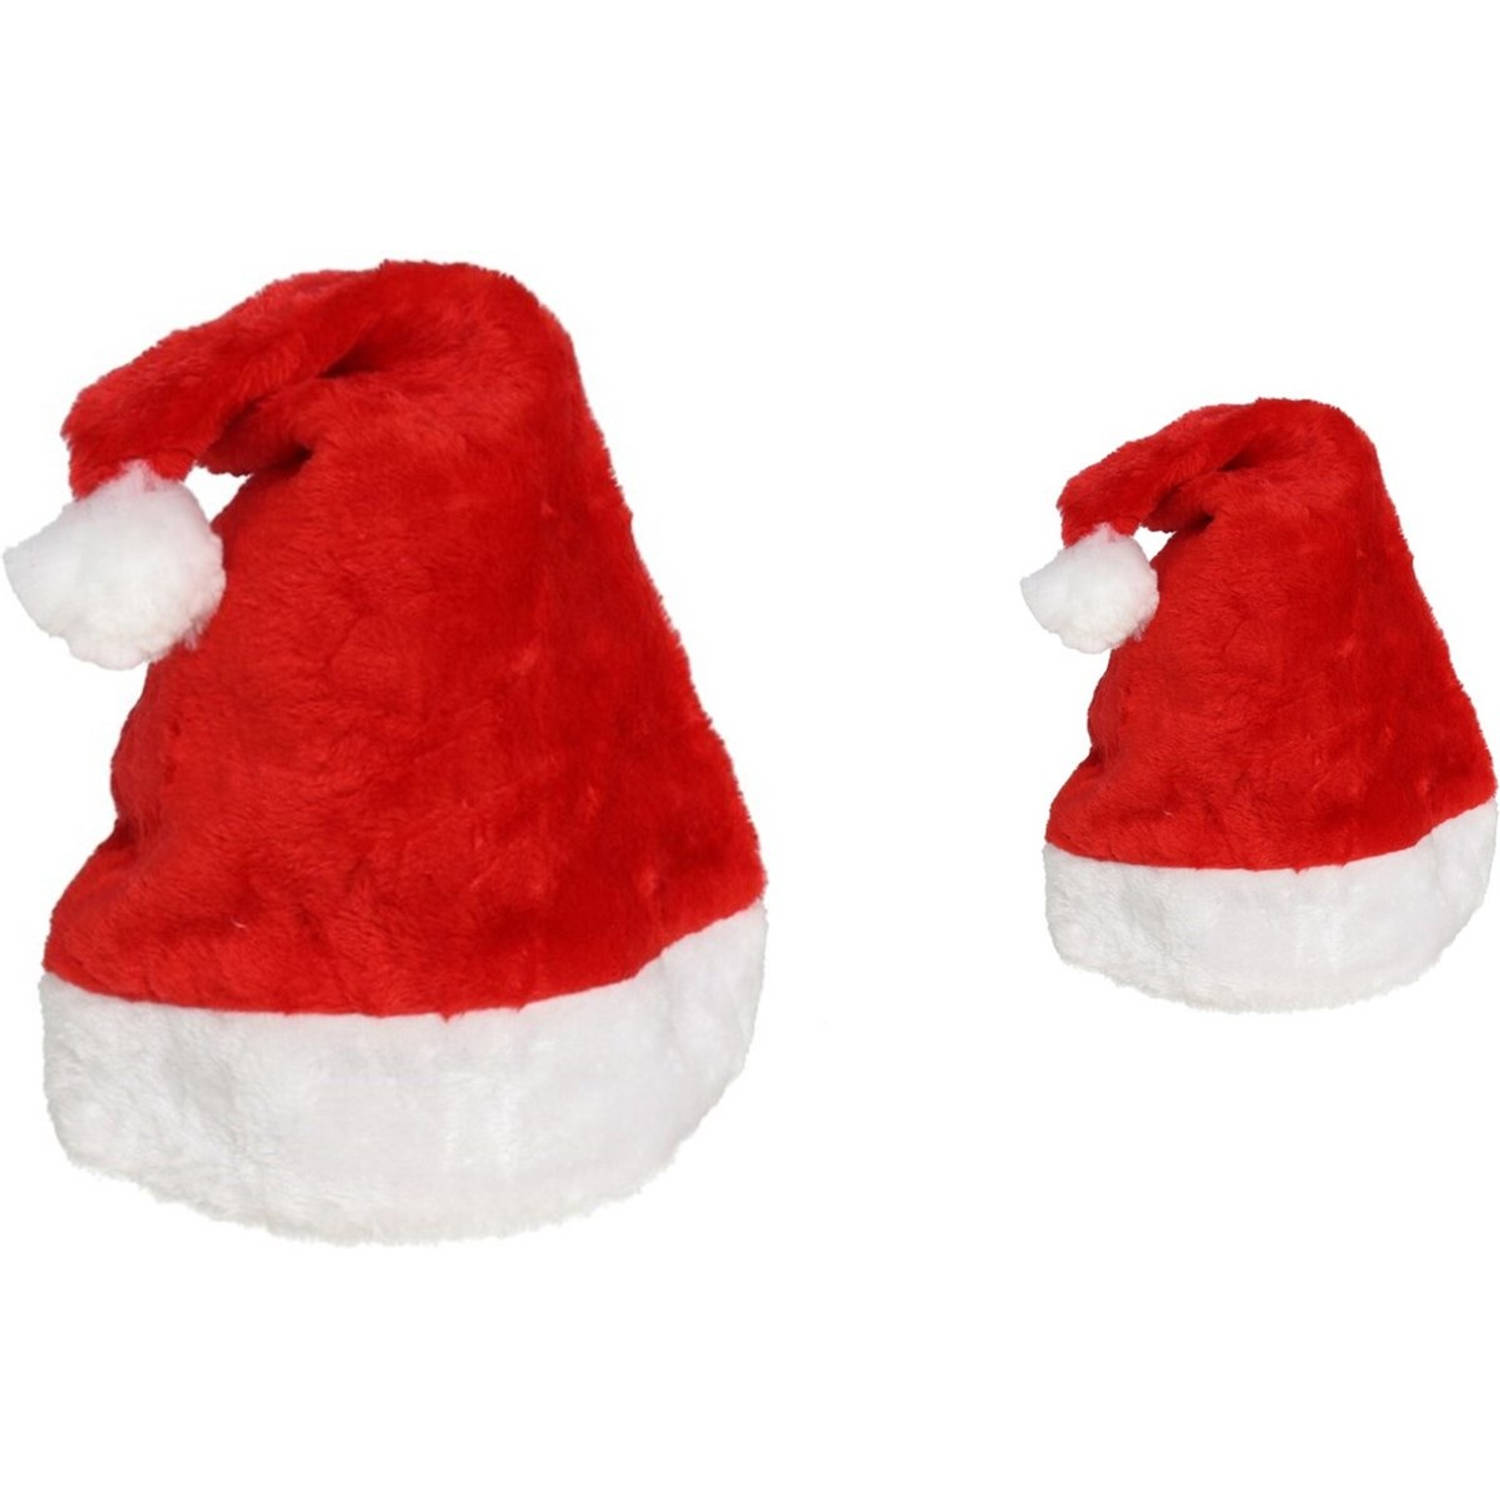 2 Stuks Kerstmuts |Merry Christmas |100% Polyester luxe kerstmuts voor kinderen | Kerstmutsen